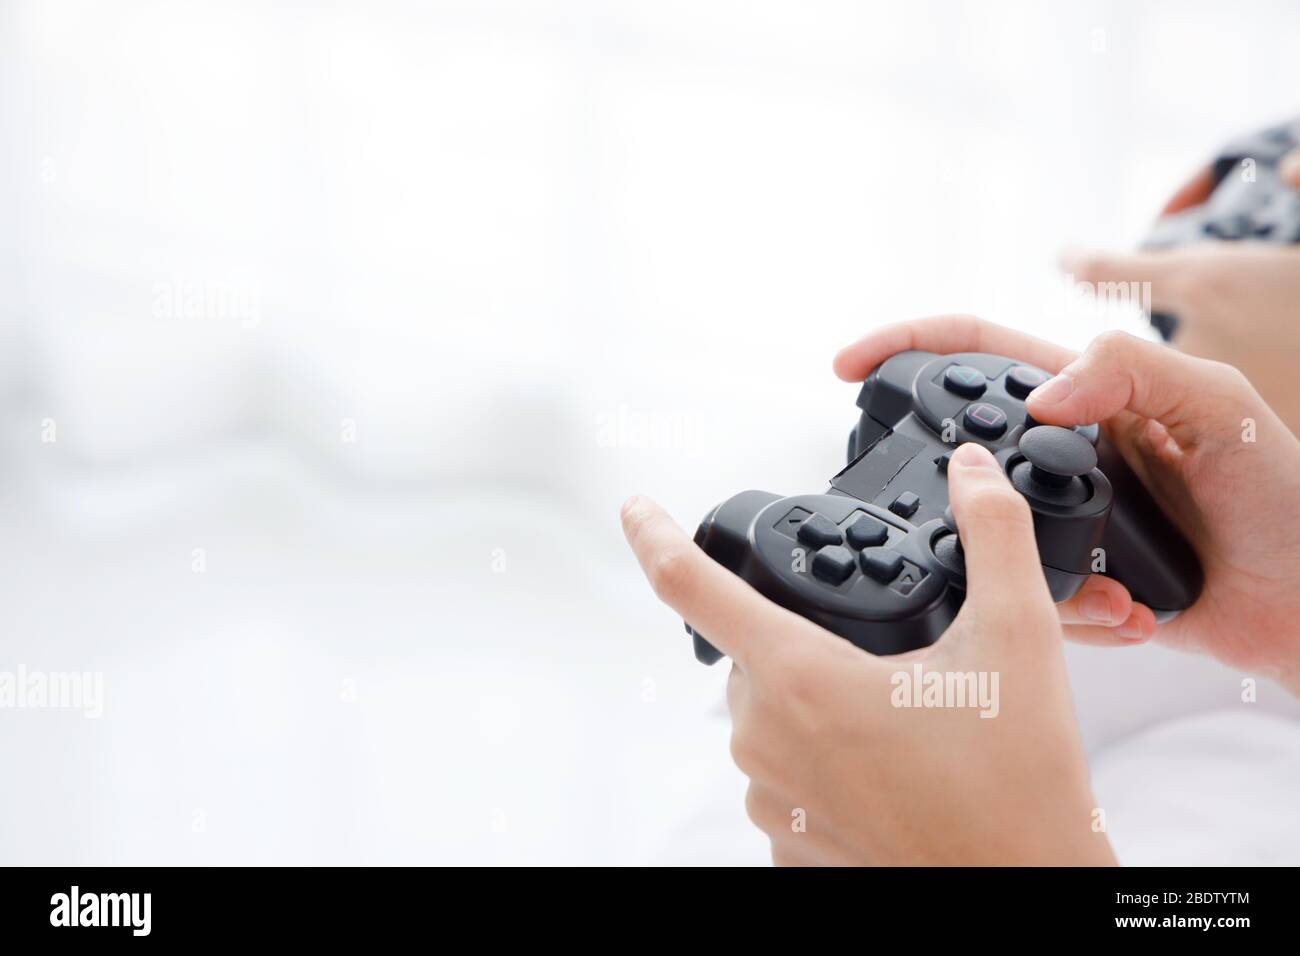 Primer plano mano sosteniendo el mando de juego inalámbrico negro con espacio de copia en el lado izquierdo. Foto de stock